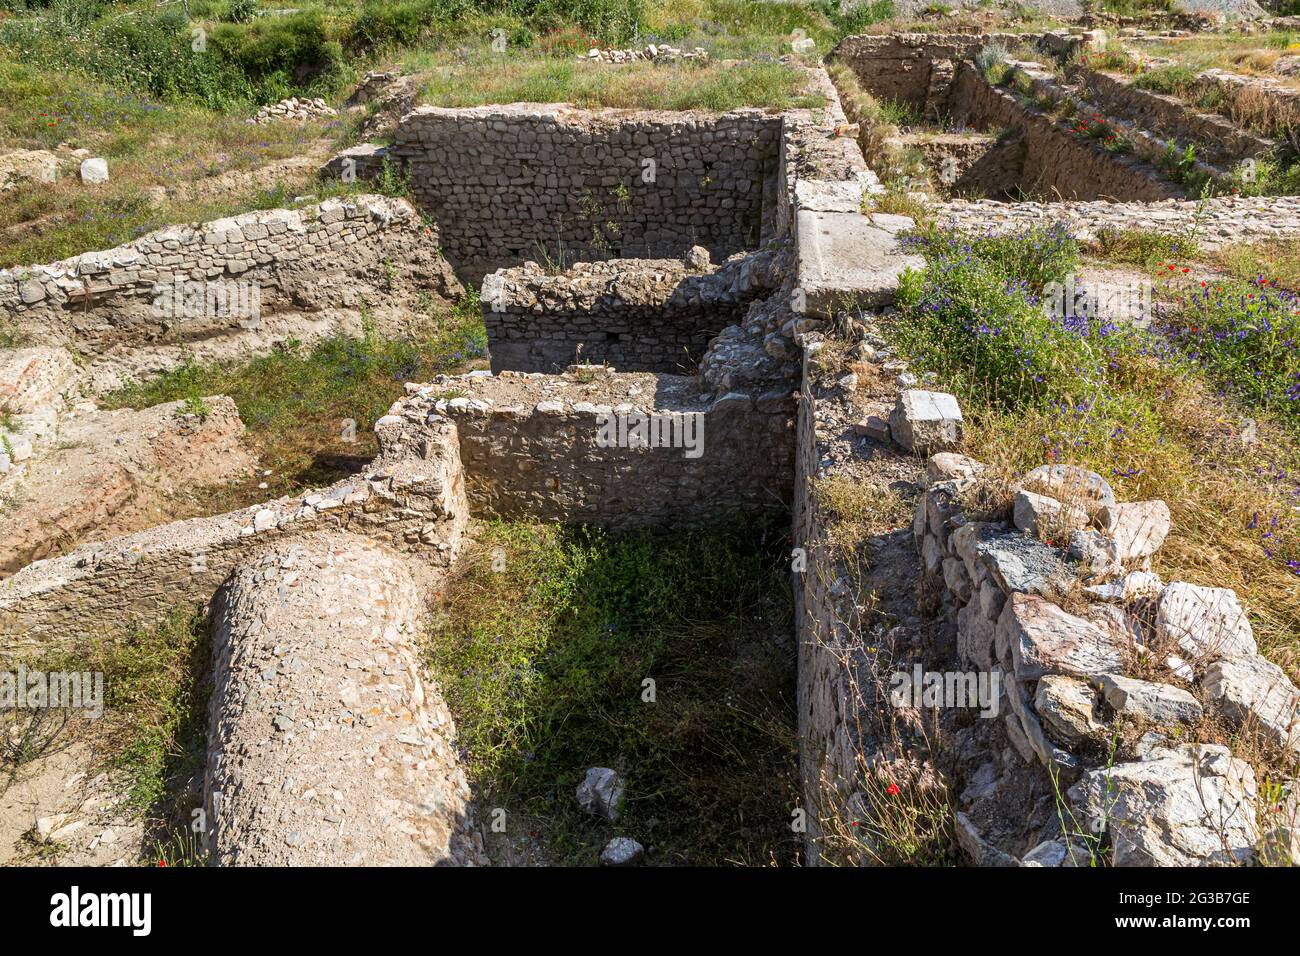 Le site d'excavation de l'ancienne ville de Heraclea Sintica près de Petrich, Bulgarie. Heraclea Sintica a été fondée vers 300 av. J.-C. par Cassander, roi du Royaume de Macédonie (r. 305-297 BC), qui a également fondé Thessalonique Banque D'Images